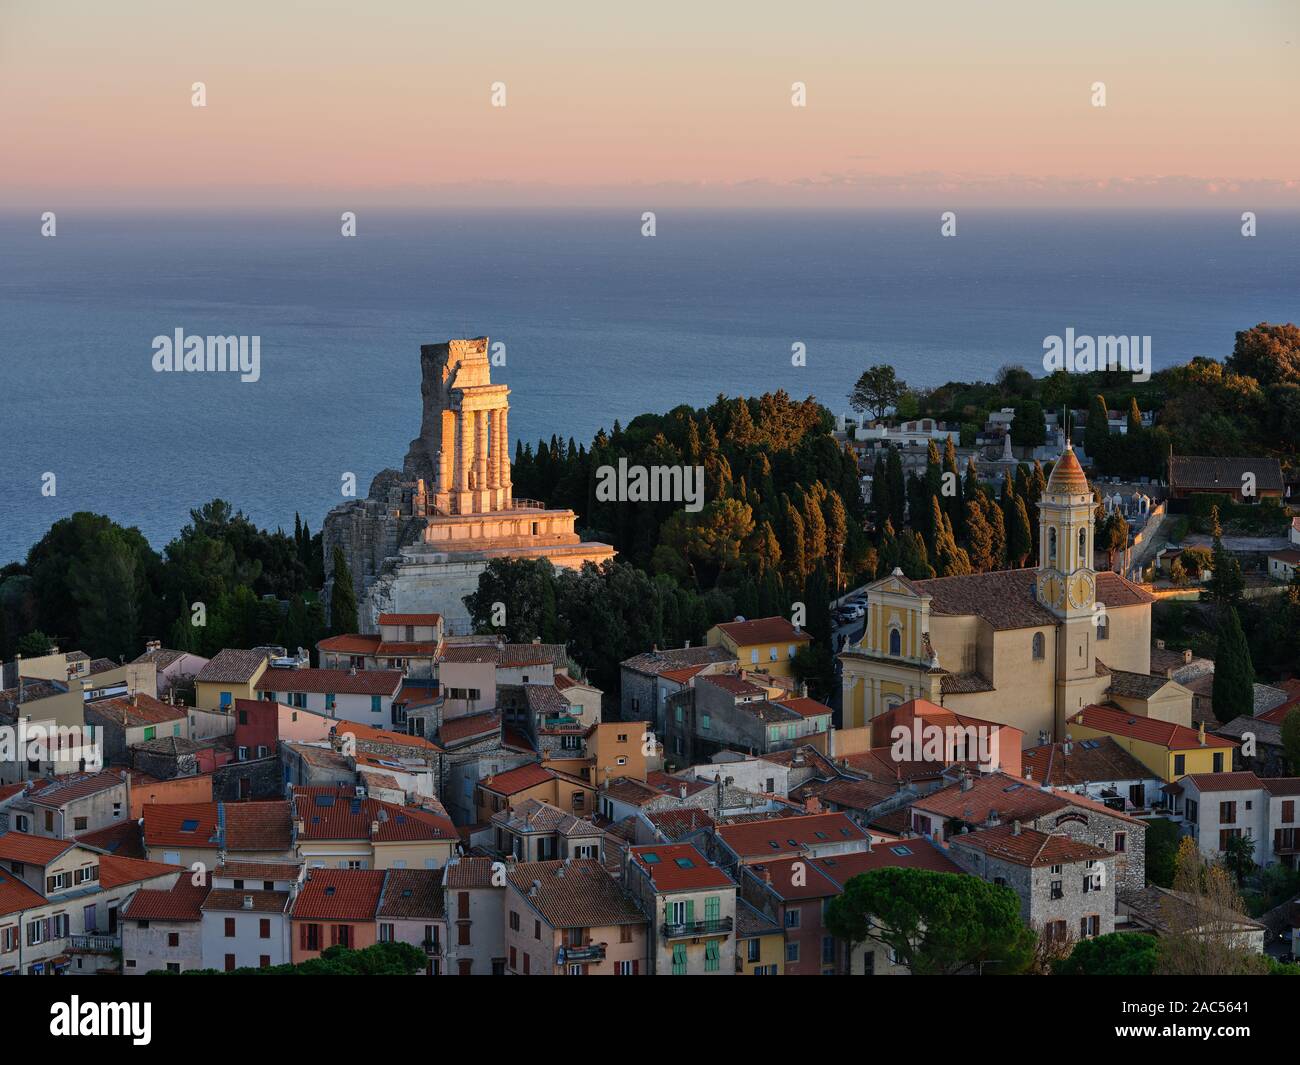 Tramonta il sole illuminando selettivamente un monumento romano di 2000 anni che si affaccia sul Mar Mediterraneo. La Turbie, Costa Azzurra, Alpi Marittime, Francia. Foto Stock